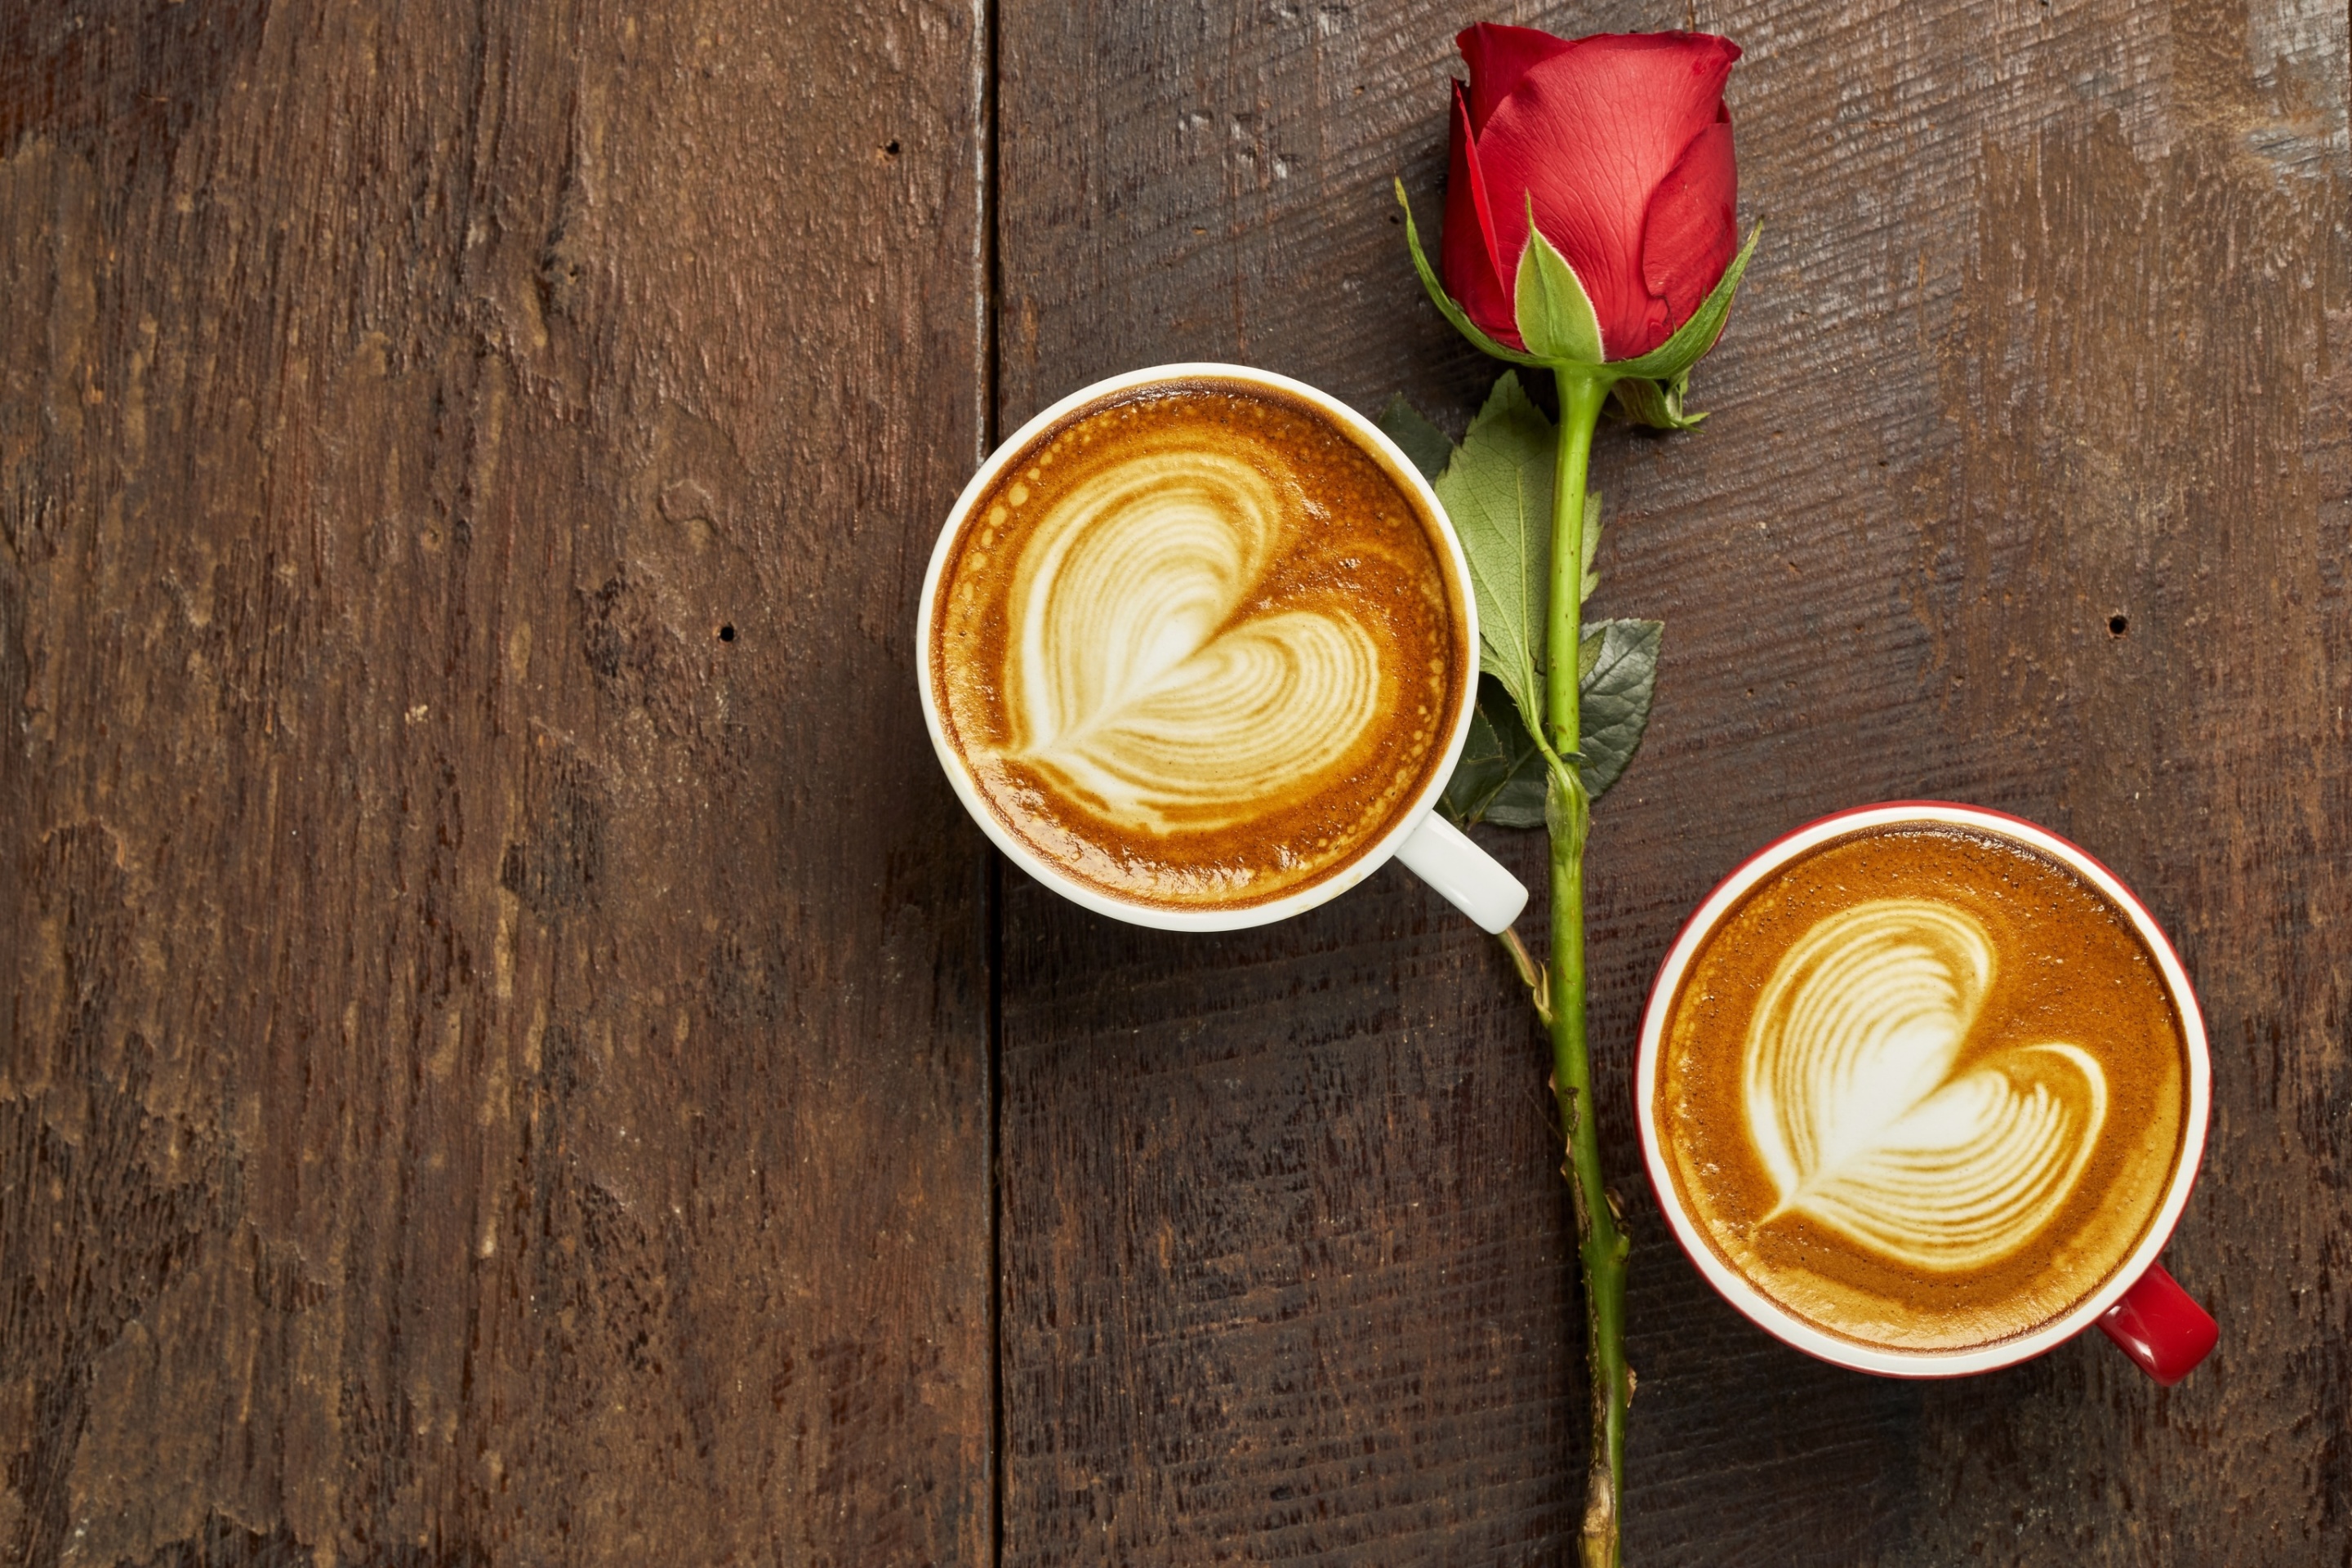 Обои Romantic Coffee and Rose 2880x1920